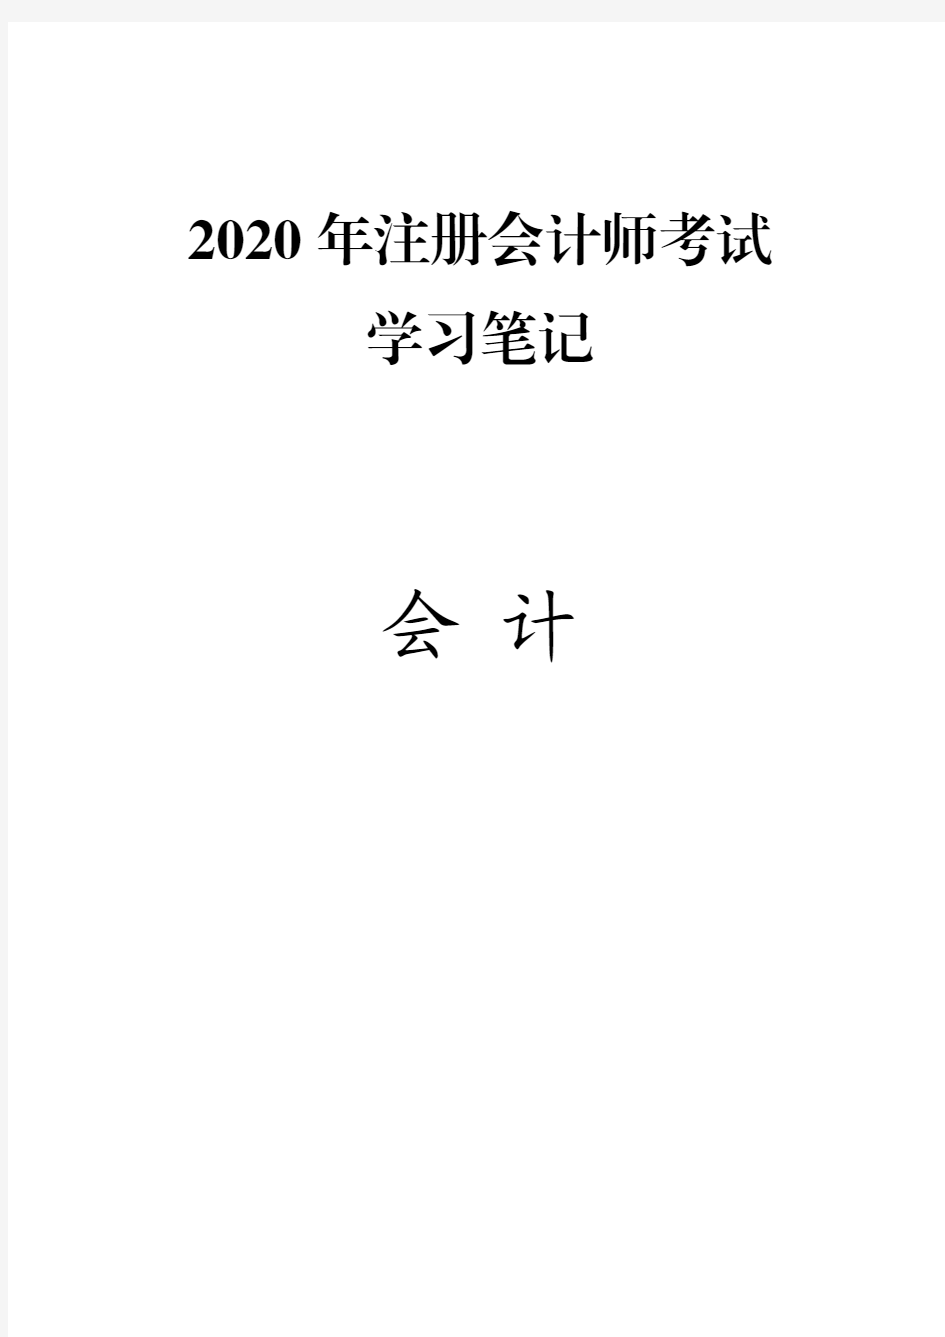 (推荐下载)2020年注册会计师(CPA)考试笔记精华版-会计 (1)